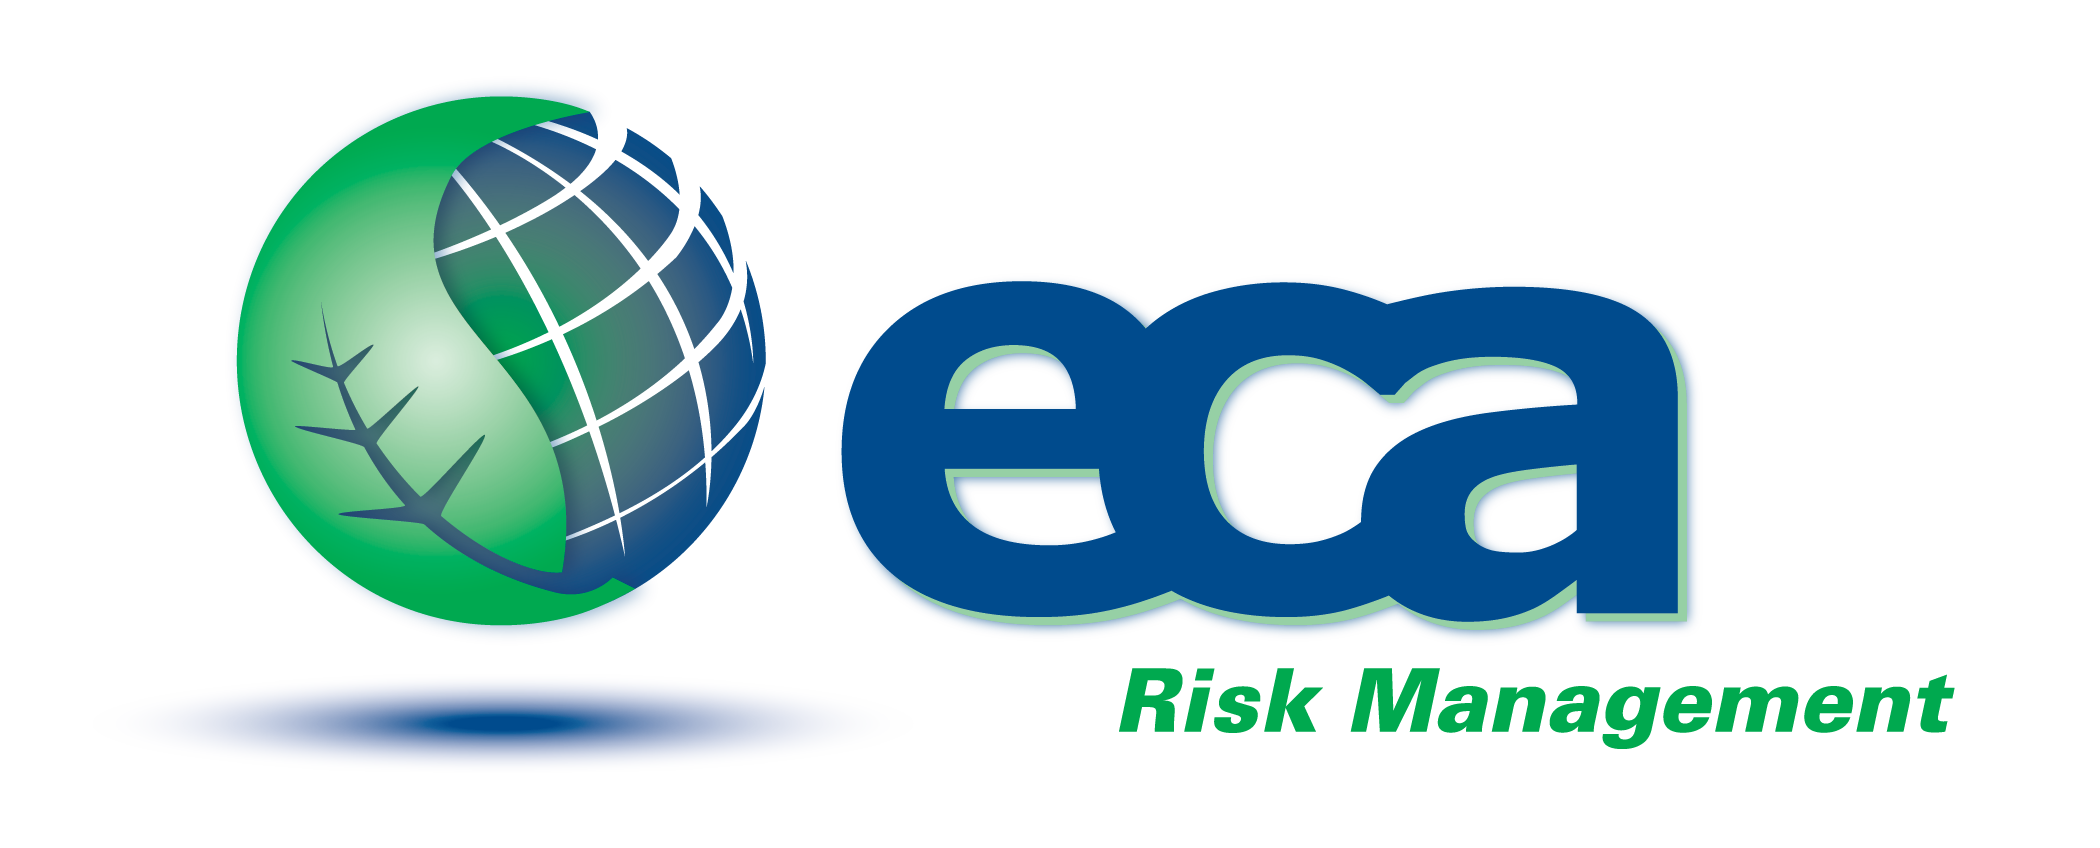 ECA Risk Management